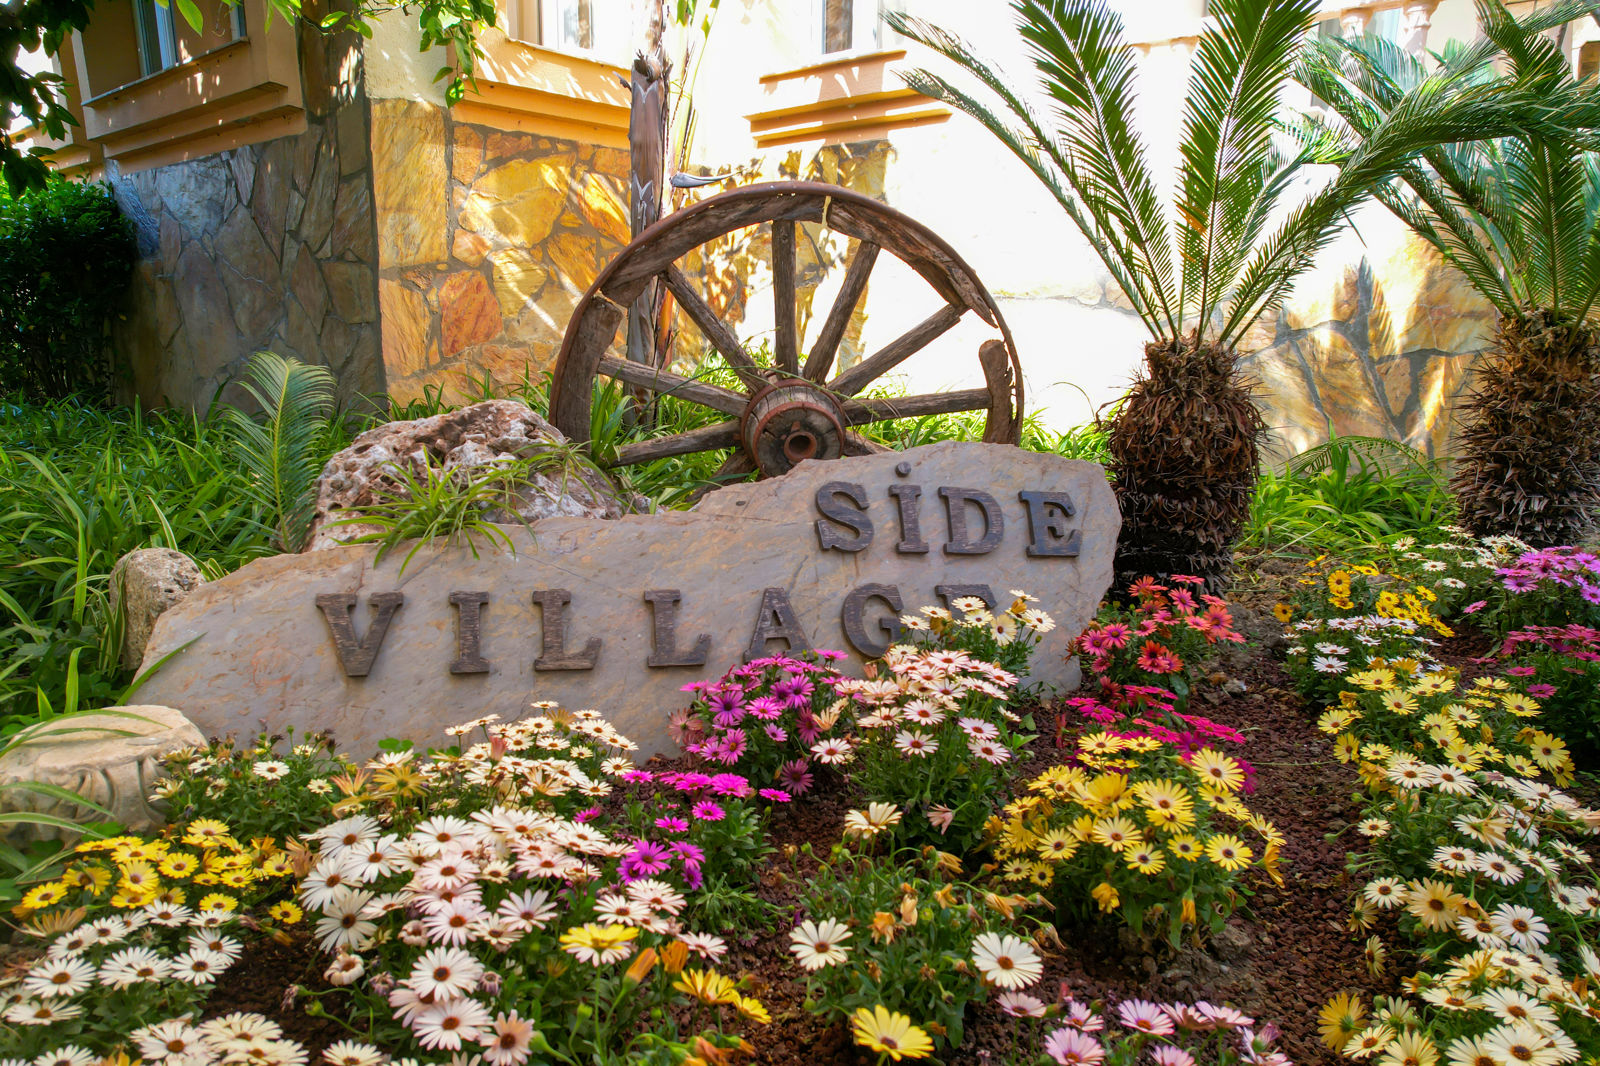 Meer info over Side Village Hotel  bij Corendon